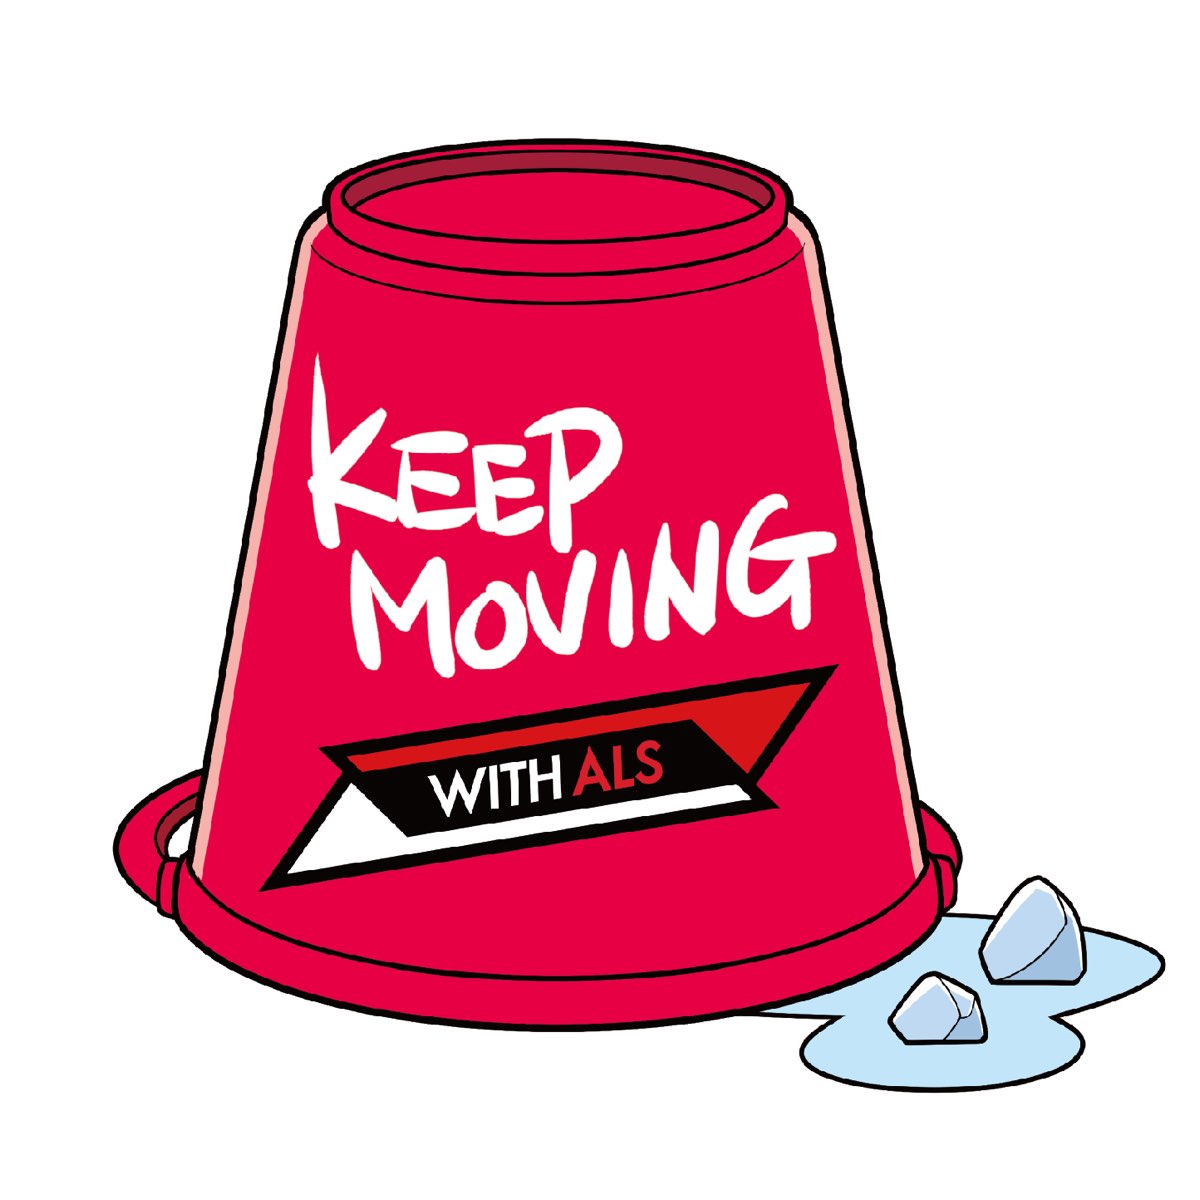 Keep moving. Yay Baby. Keep on moving kastuvas feat. Emie. Kastuvas emie keep on moving